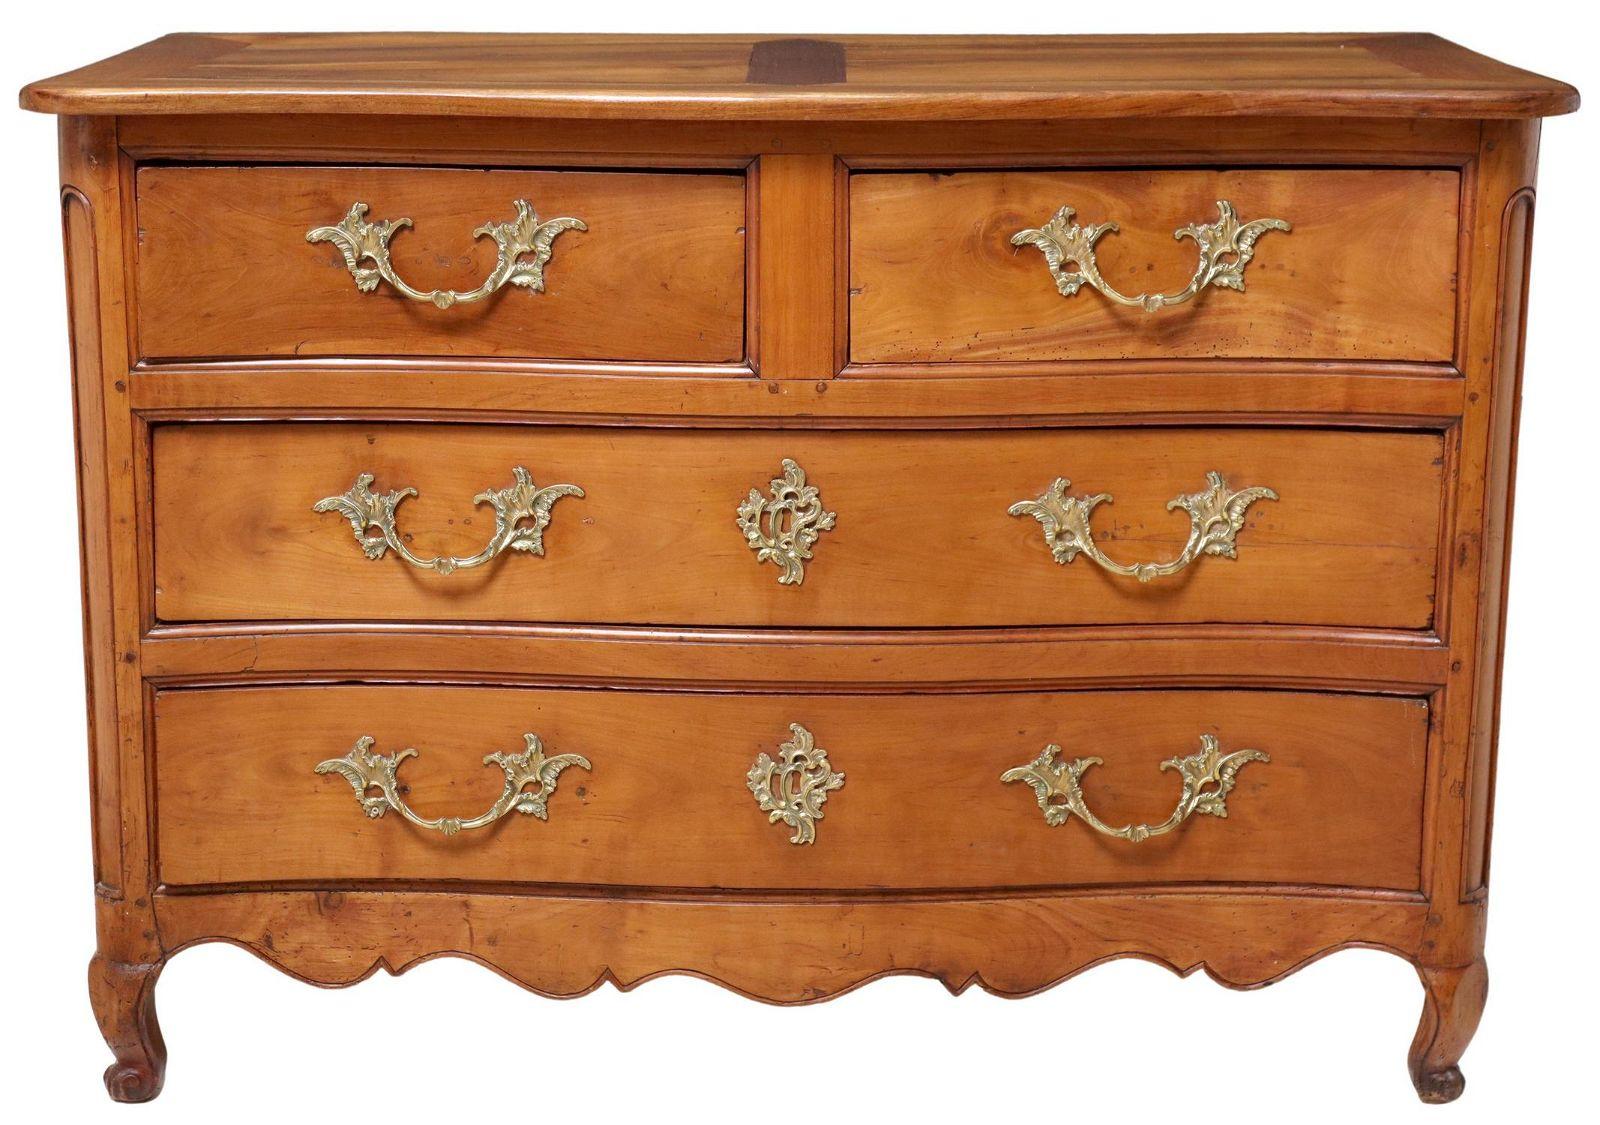 Ancienne commode Louis XV en noyer et bois fruitier, C.C. La commode se compose de deux tiroirs courts sur deux tiroirs longs, reposant sur de courts pieds cabriole. Les ferrures en laiton sont également d'origine. Les tiroirs et les panneaux de la